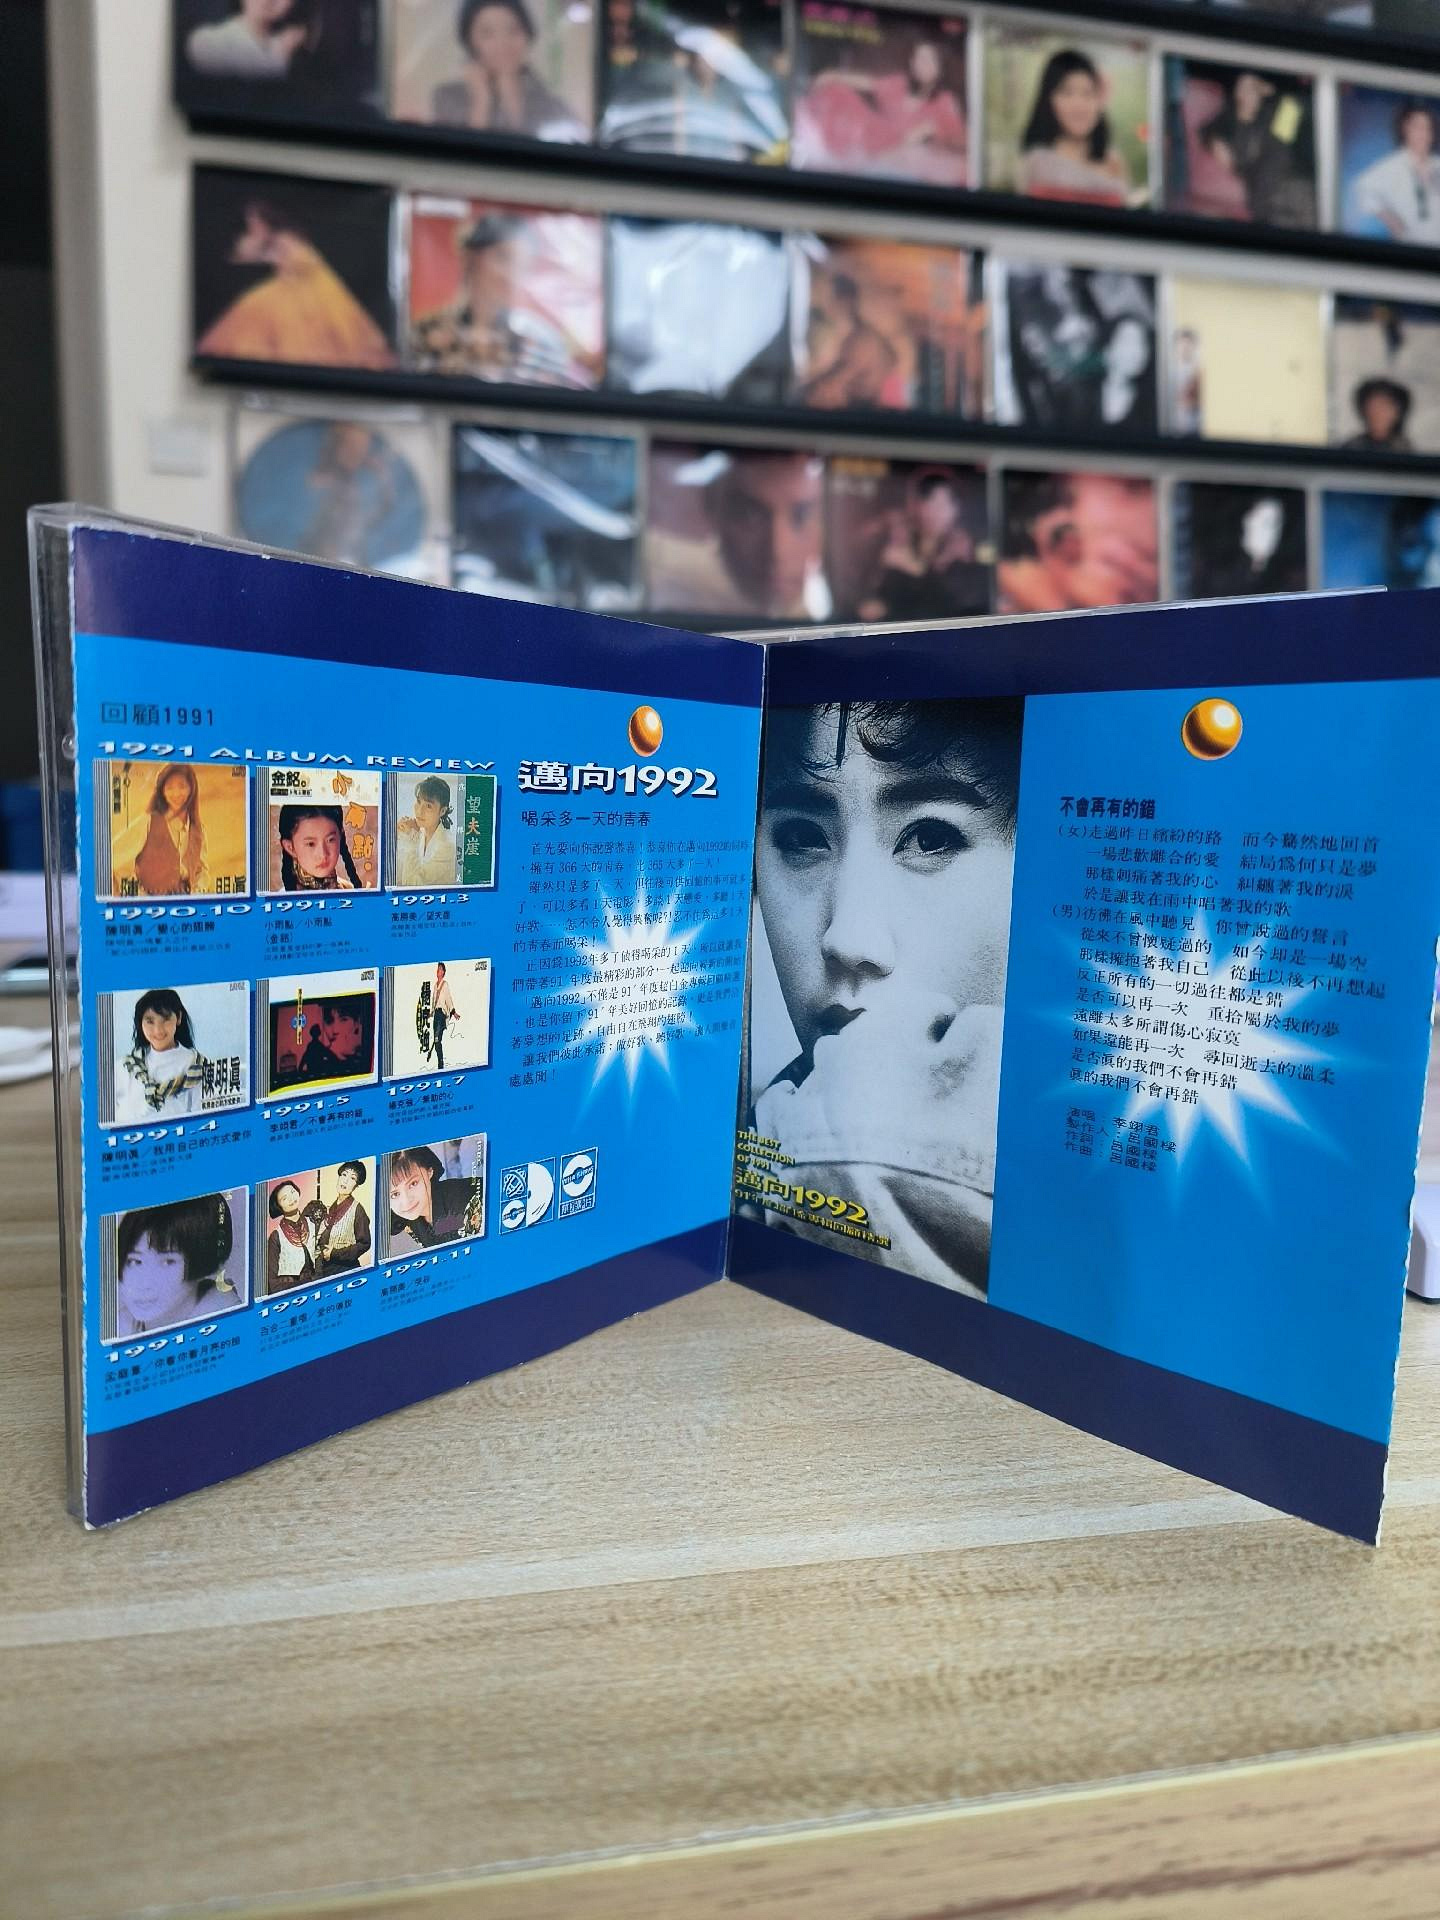 二手】 91年度超白金專輯回顧精選邁向1992 上格華星T版CD2136 音樂磁帶 